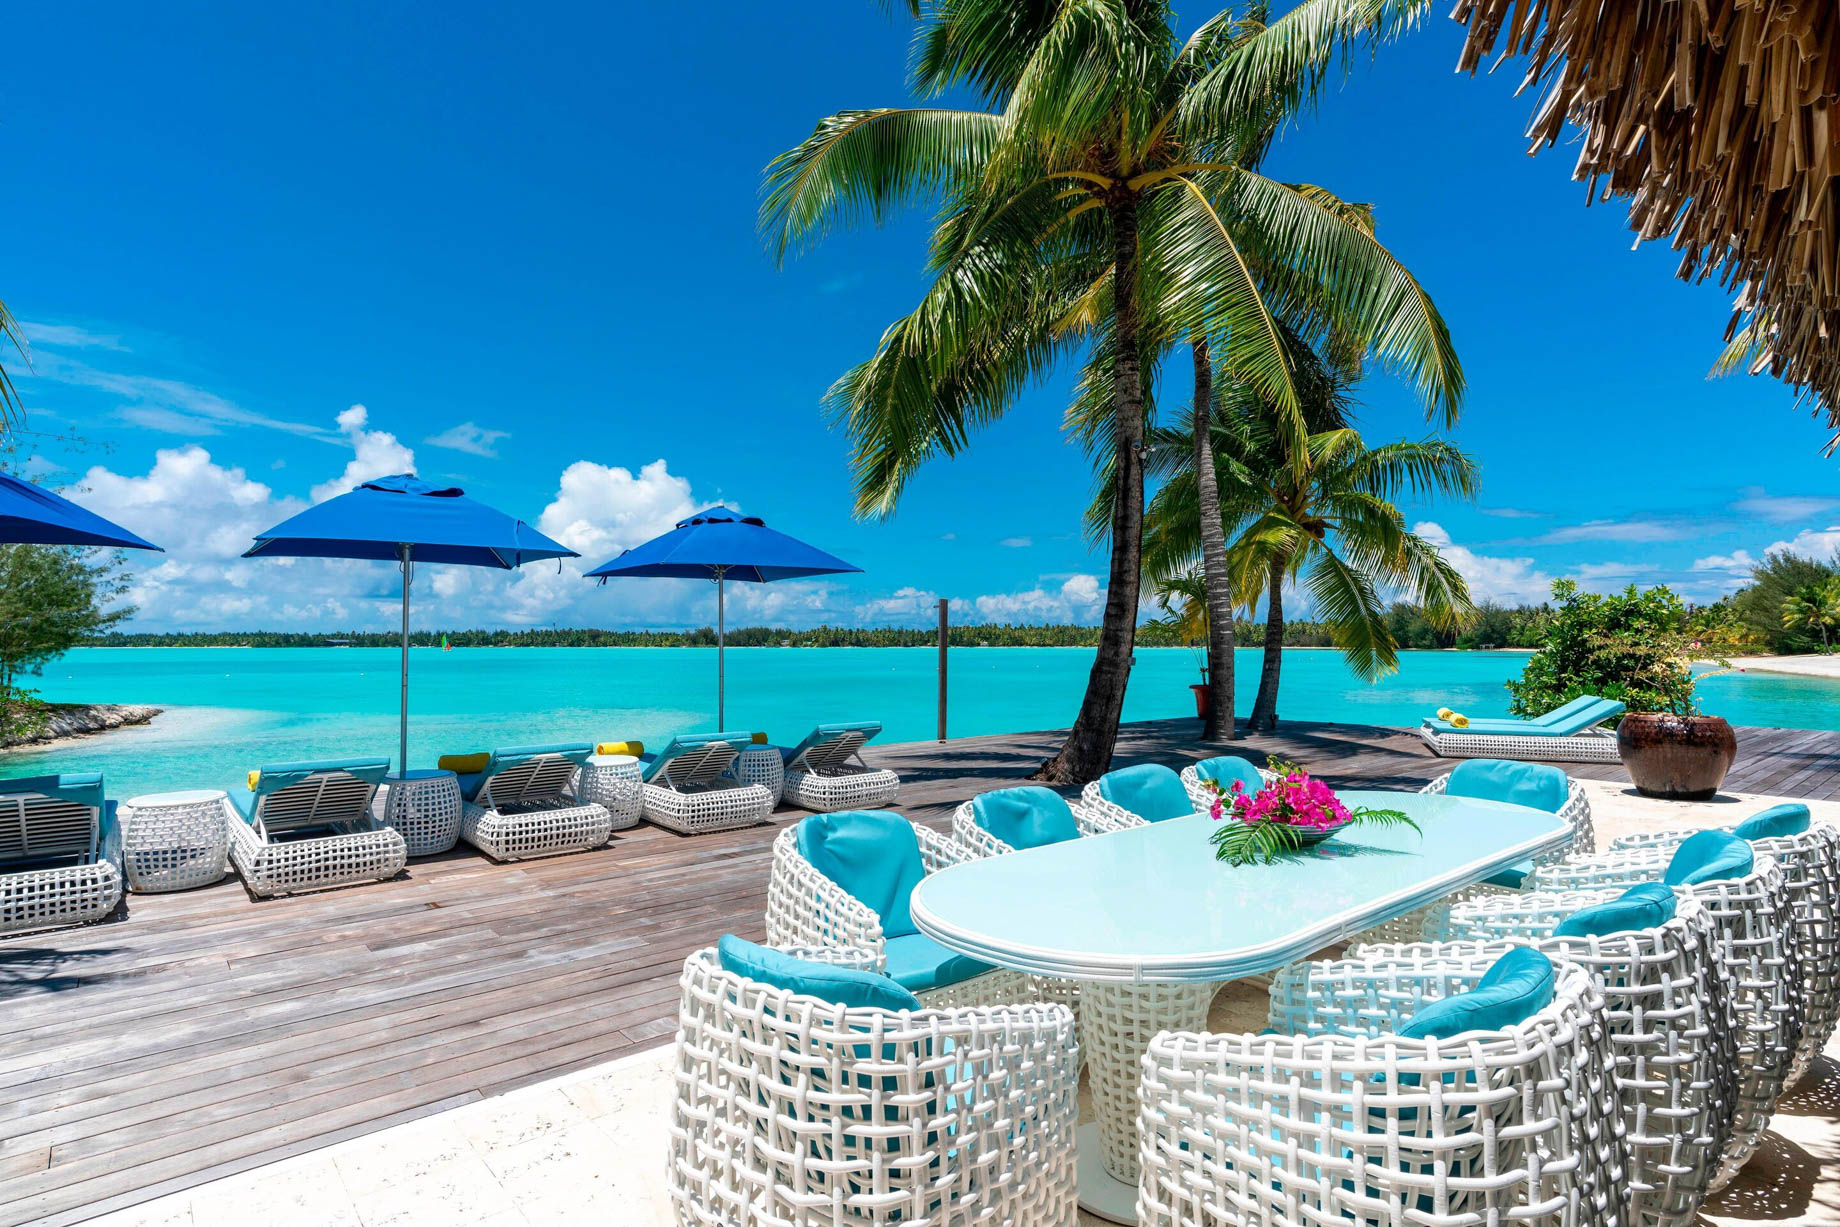 The St. Regis Bora Bora Resort - Bora Bora, French Polynesia - Royal Estate Exterior Lounge Deck